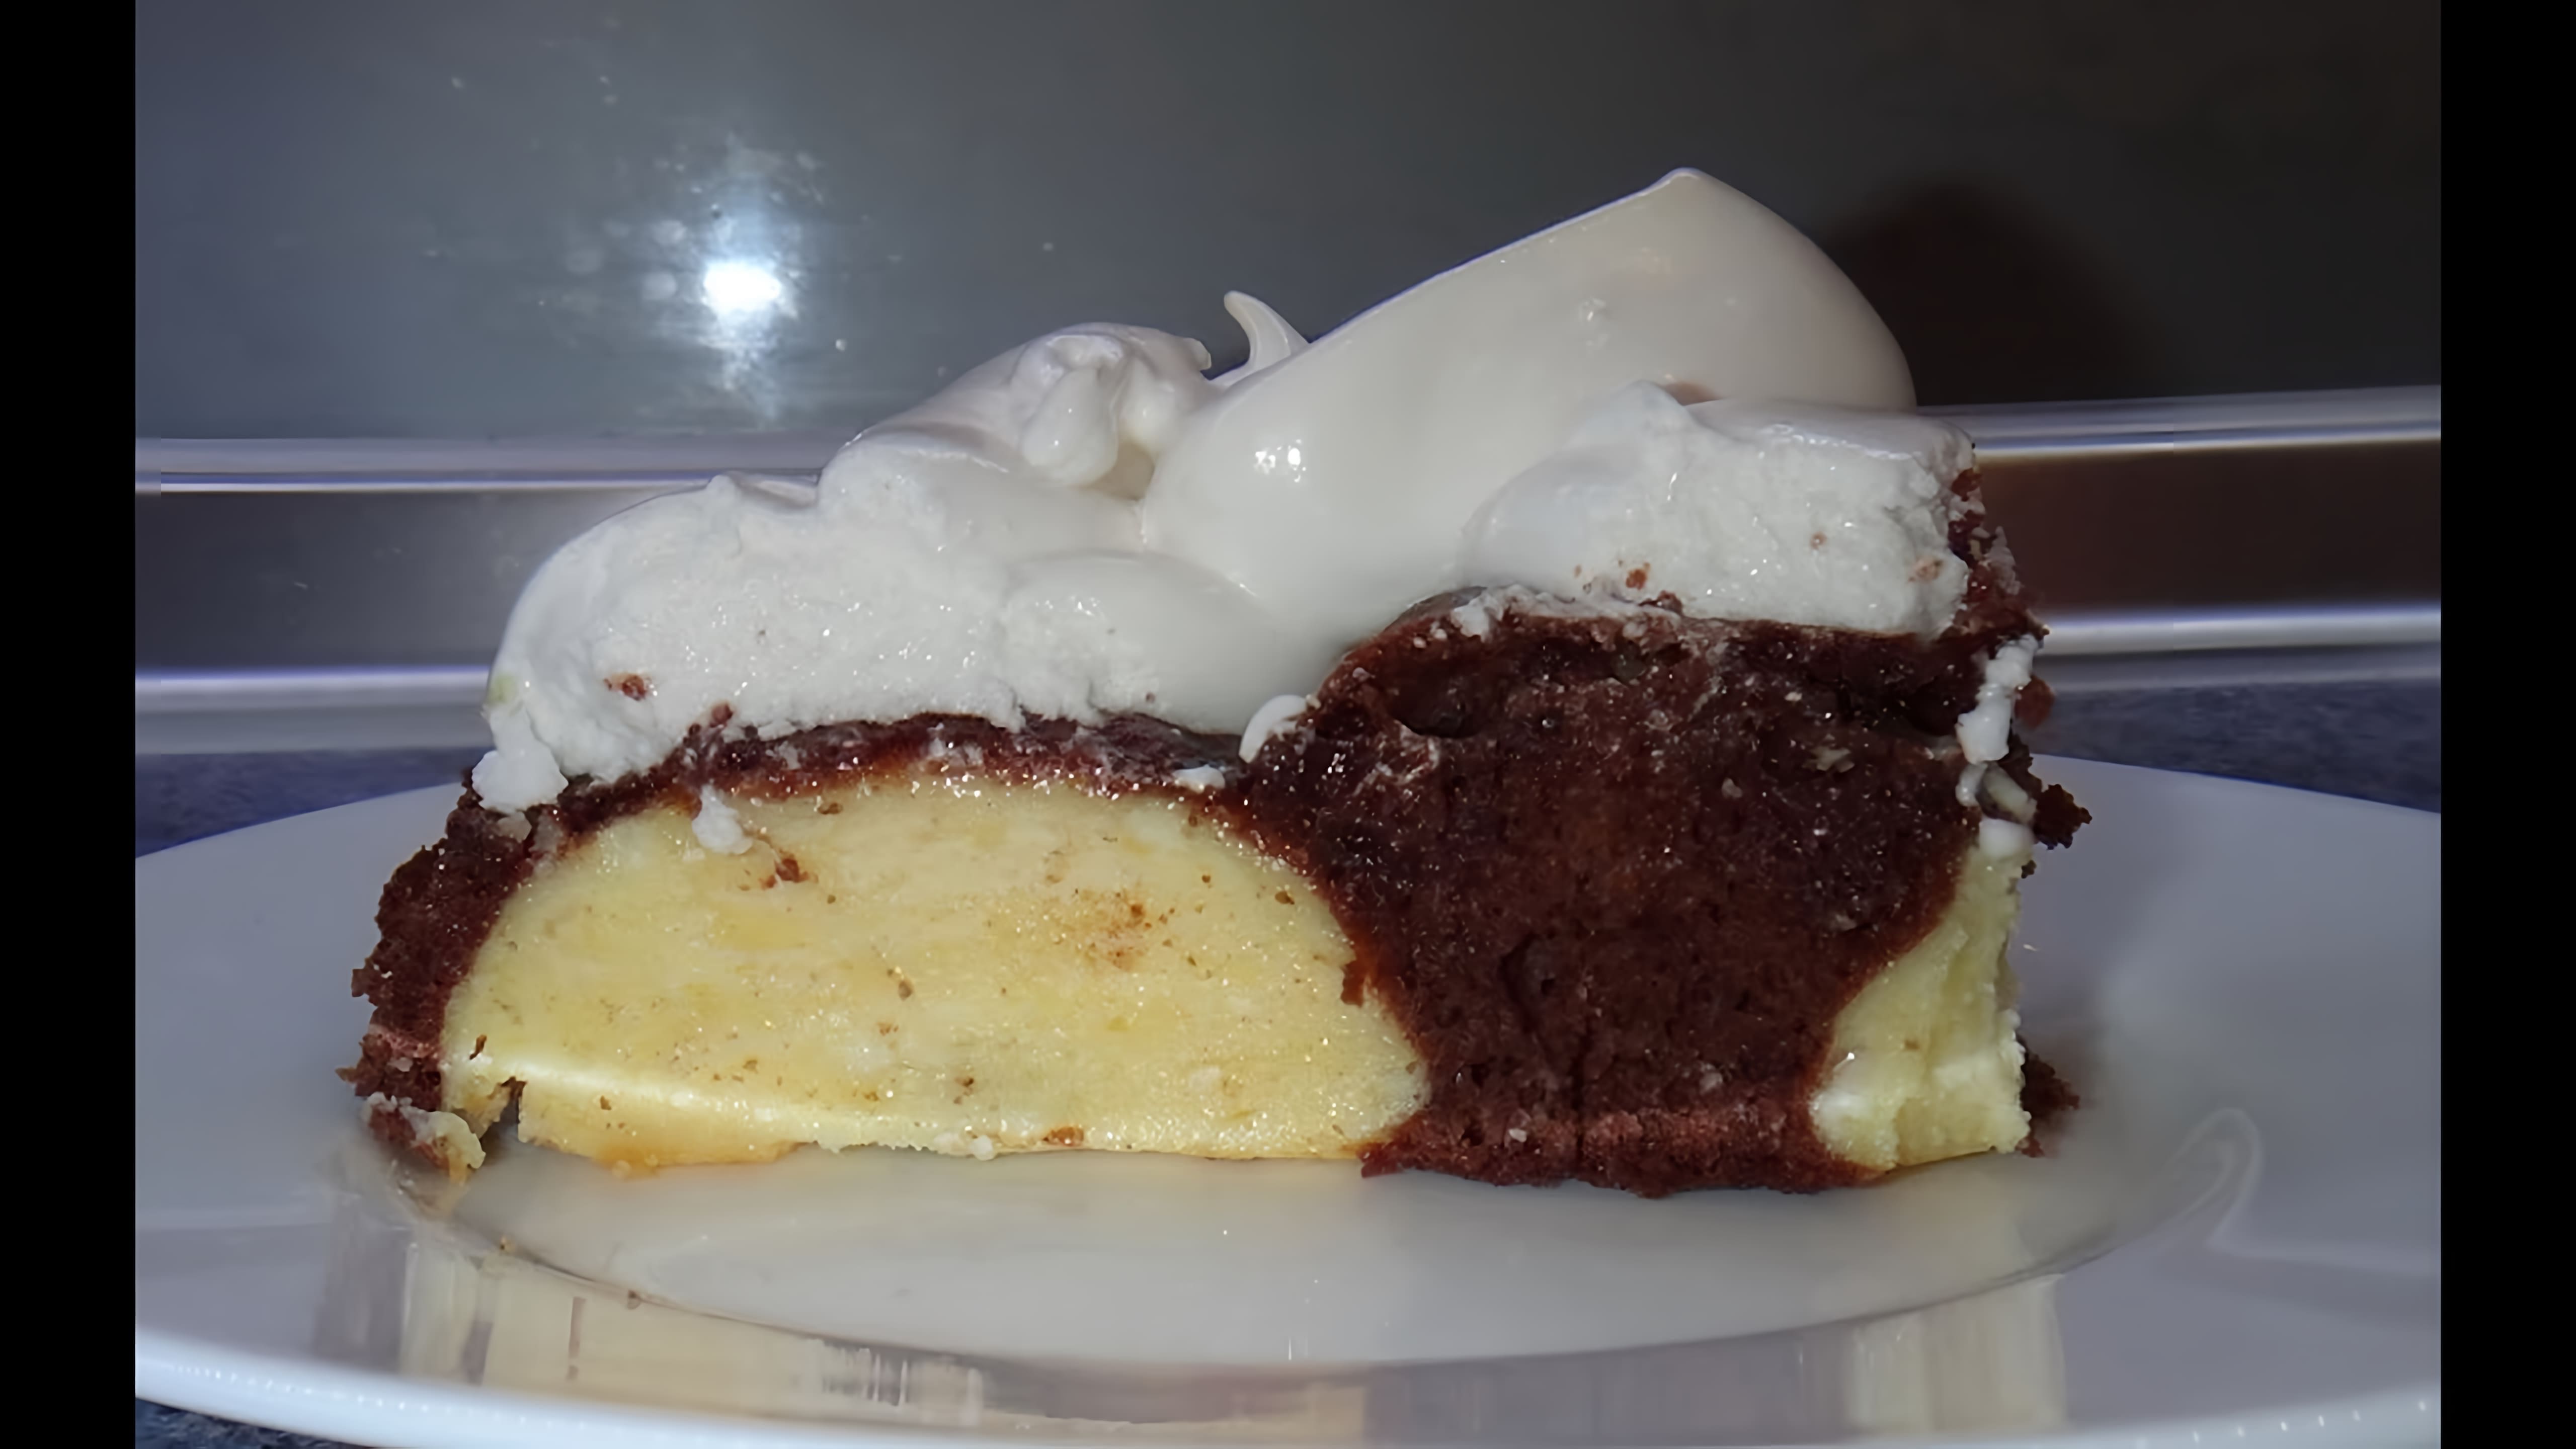 Рецепт творожного торта в домашних условиях - это видео-ролик, который показывает, как приготовить вкусный и полезный десерт своими руками